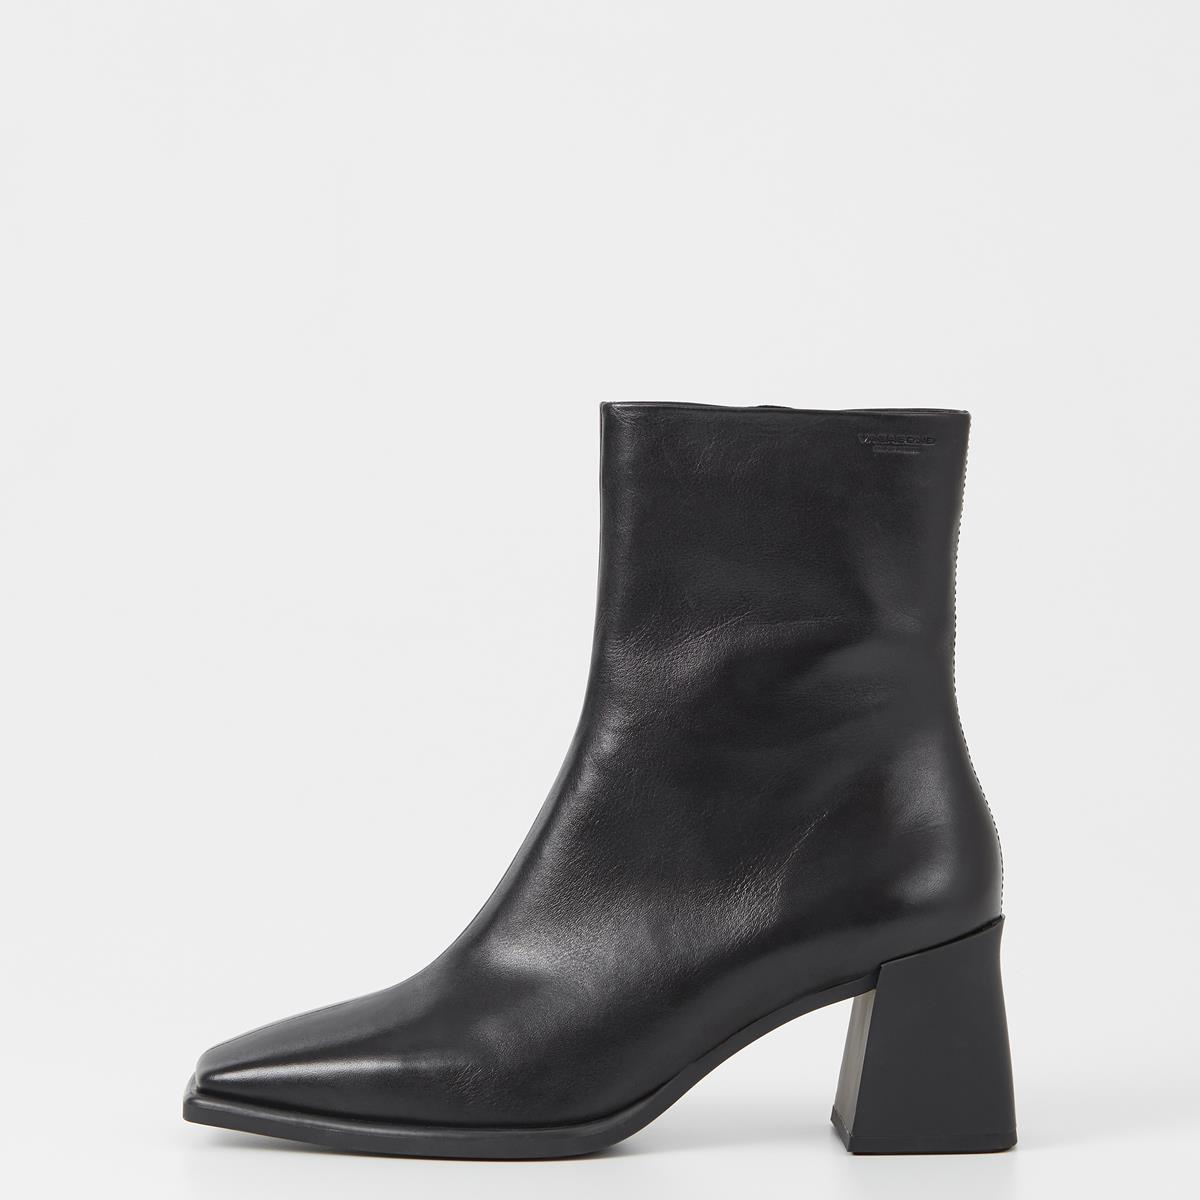 Hedda - Black Boots Woman | Vagabond